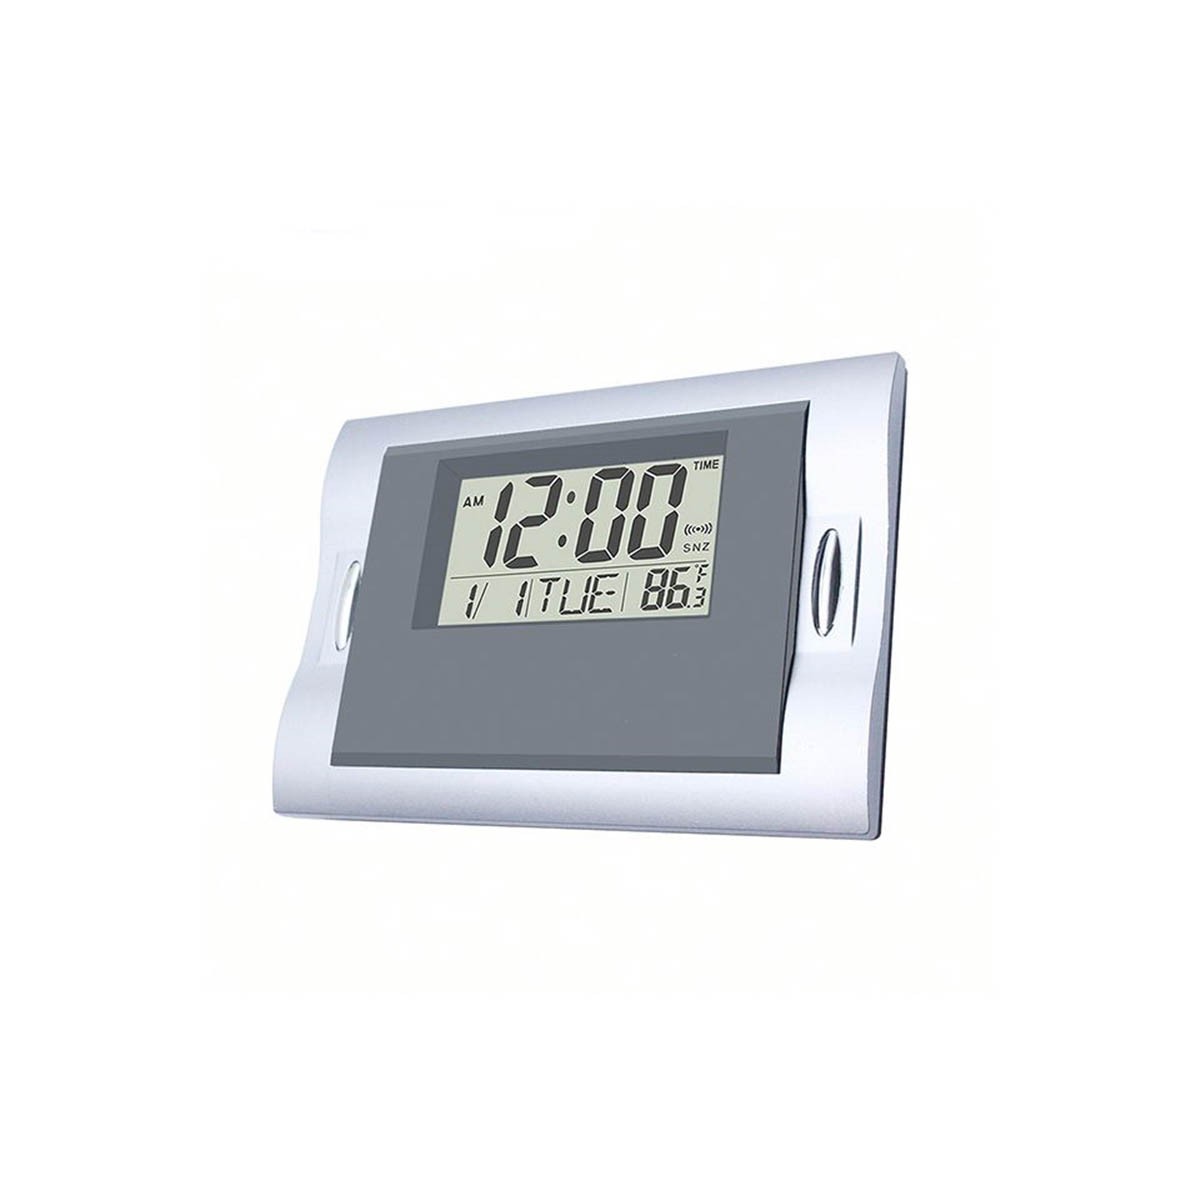 Mesa rectangular Reloj Digital Alarma, Precio bajo Mesa